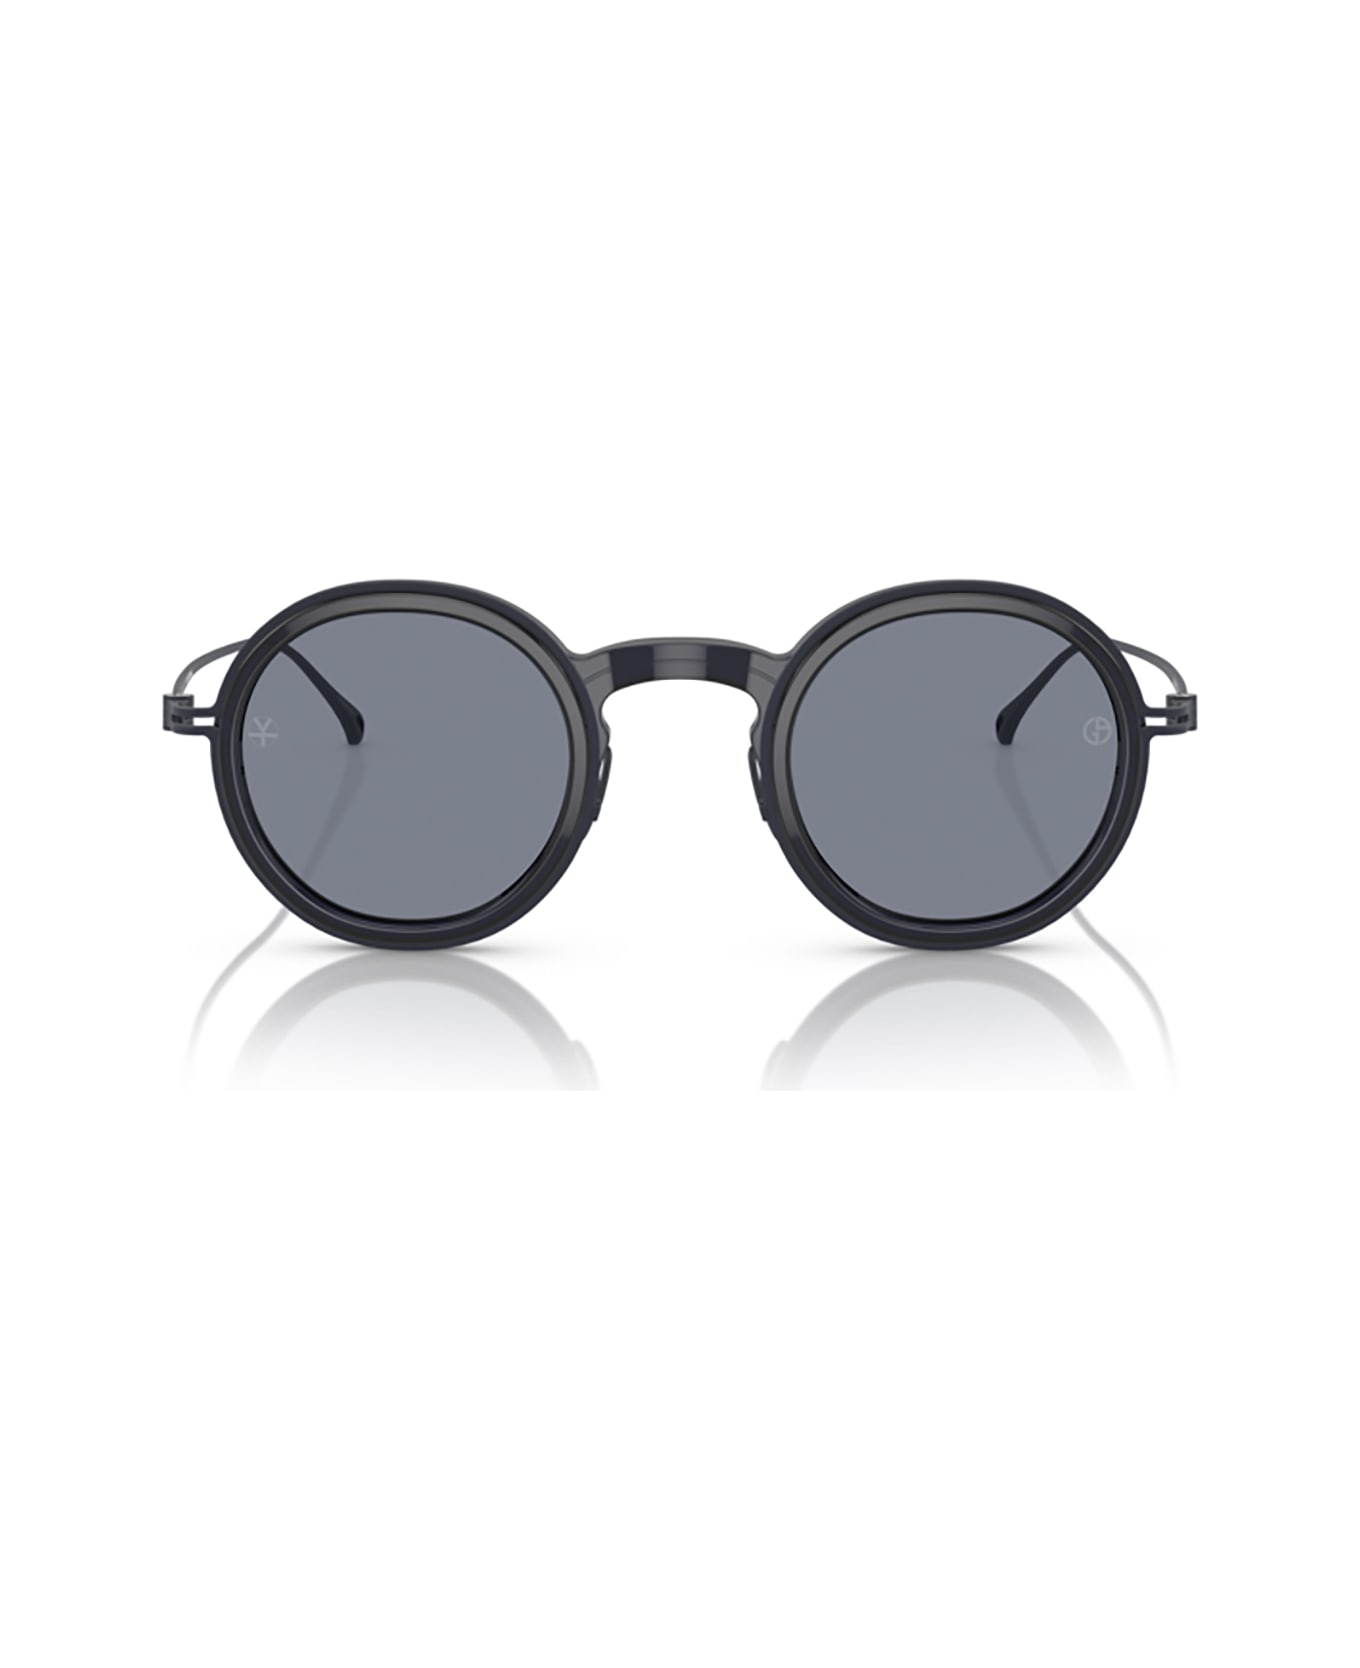 Giorgio Armani Ar6147t Shiny Transparent Blue Sunglasses - Shiny Transparent Blue